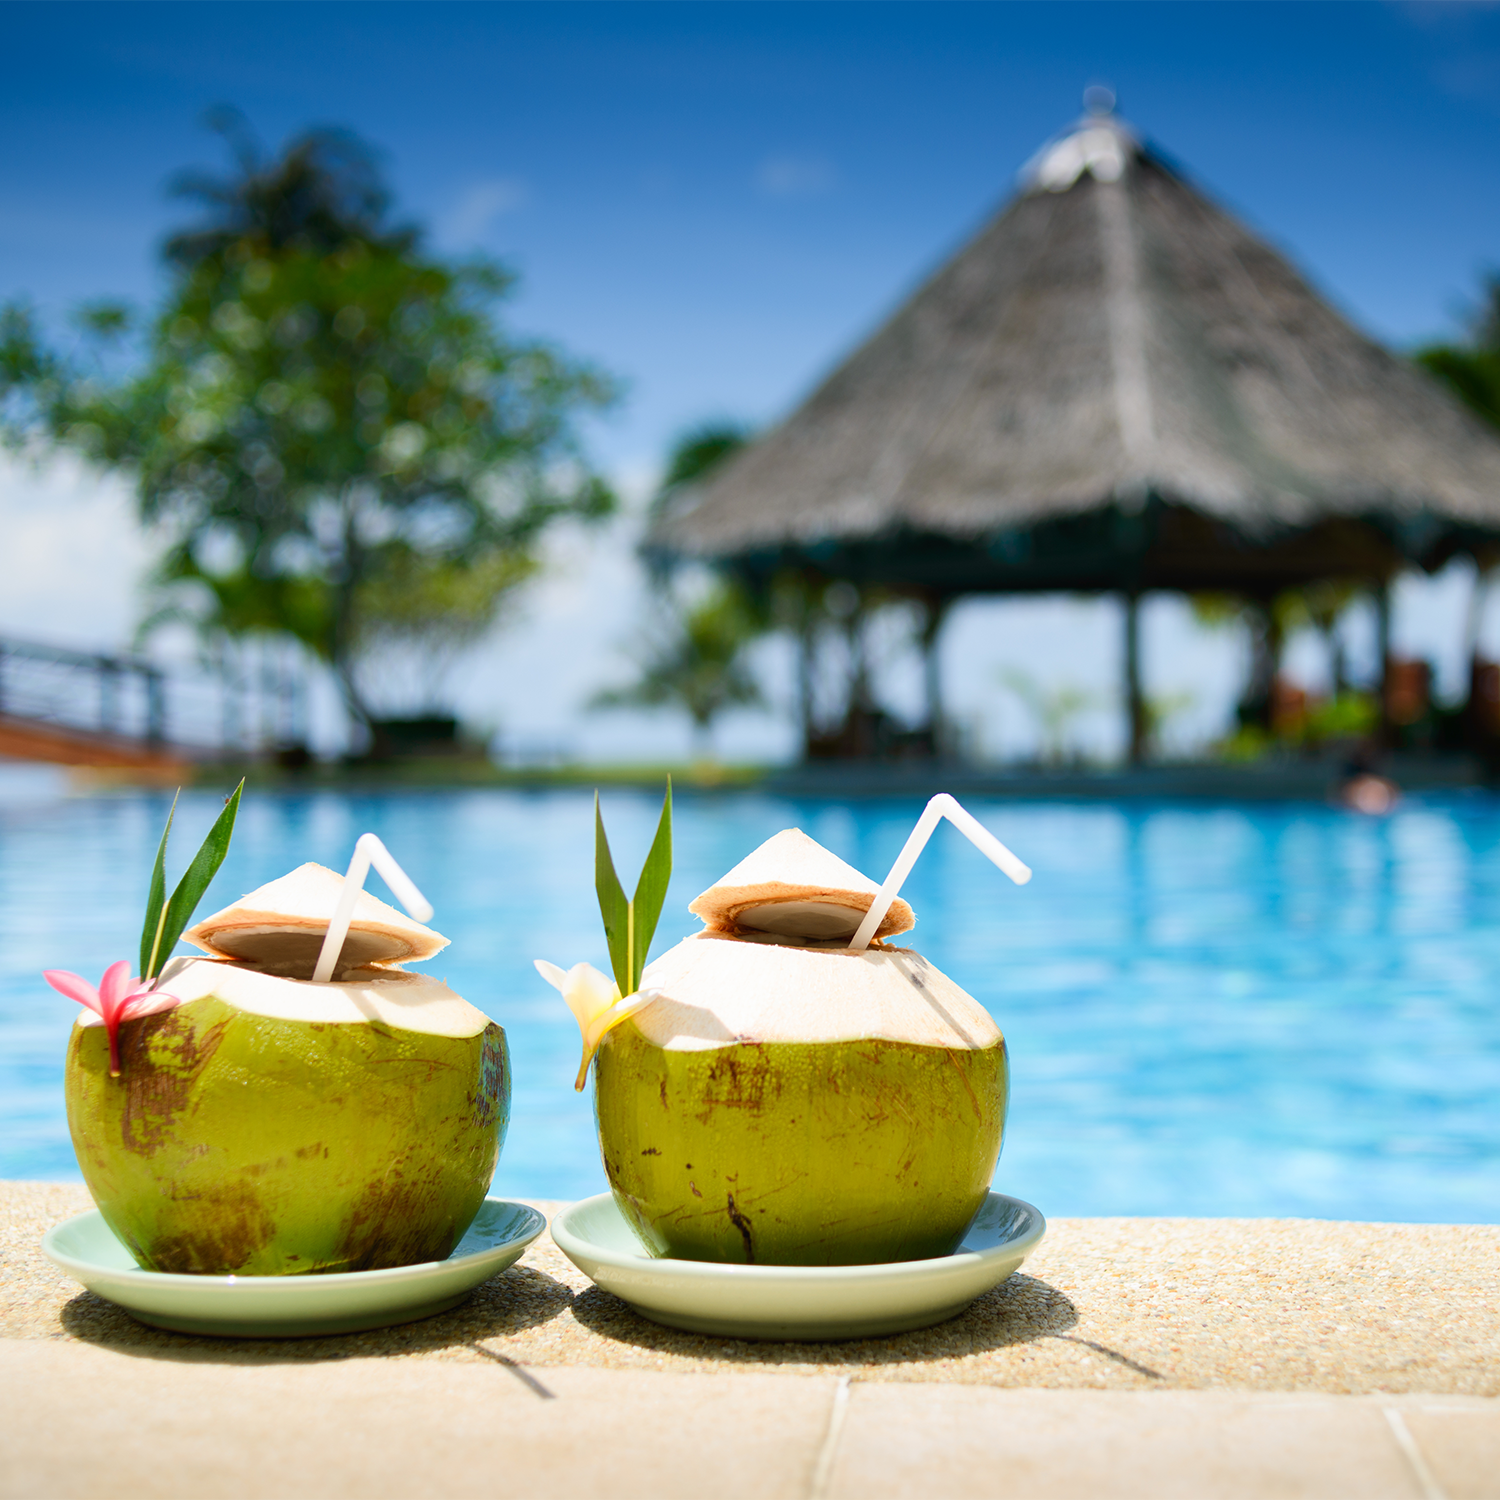 Pina coladas poolside - inspiration for our "coconut colada" fragrancebar